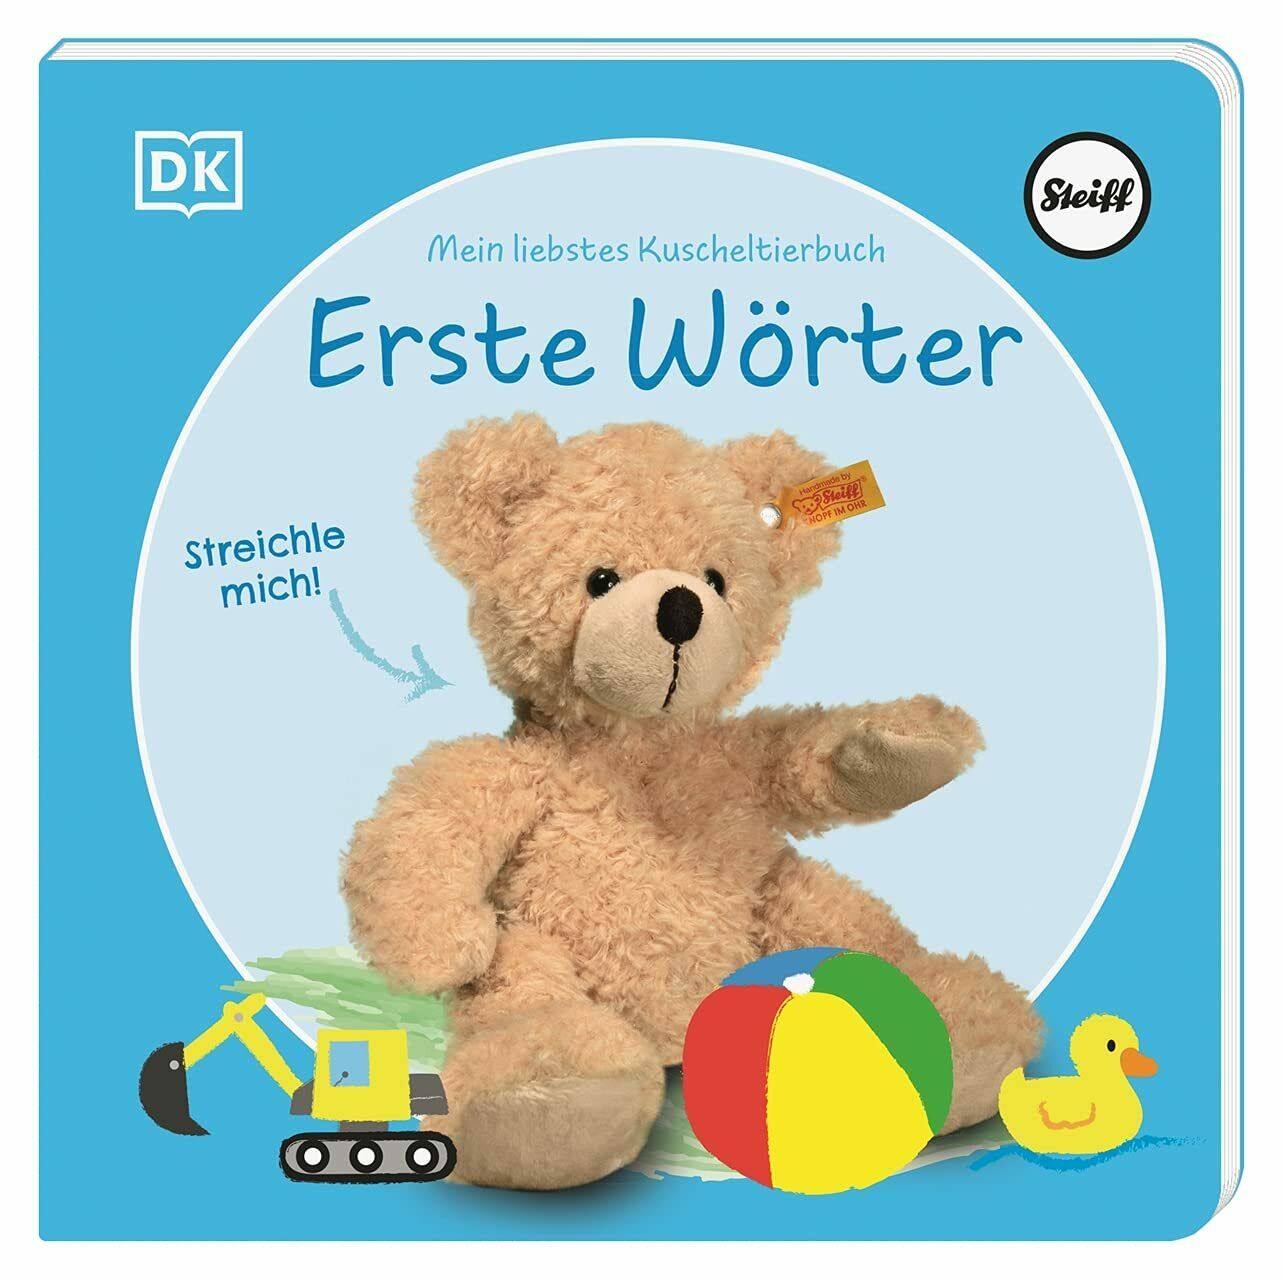 STEIFF DK Verlag Kinderbuch Mein liebstes Kuscheltierbuch 'Erste Wörter' für Kinder ab 6 Monaten